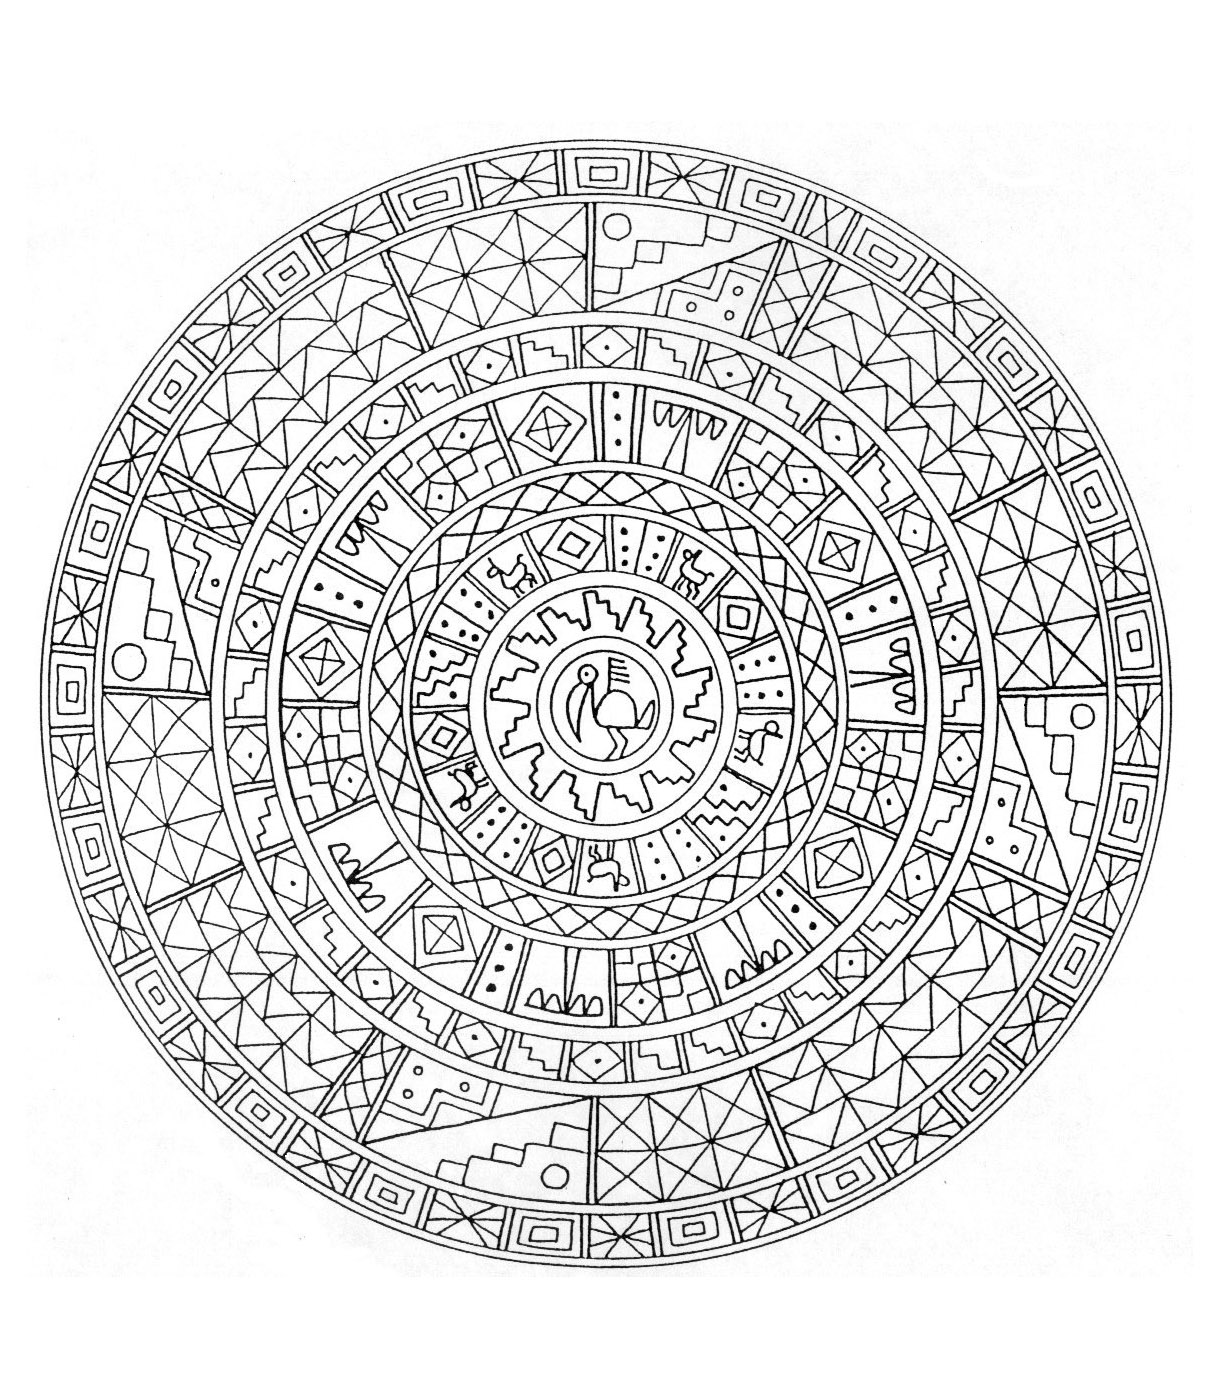 Außergewöhnliches Mandala mit mehreren geometrischen Formen, die durch Quadrate, Rauten sowie eine sehr hübsche Blume in der Mitte des Mandalas dargestellt werden. Mandala mit vielen Details.